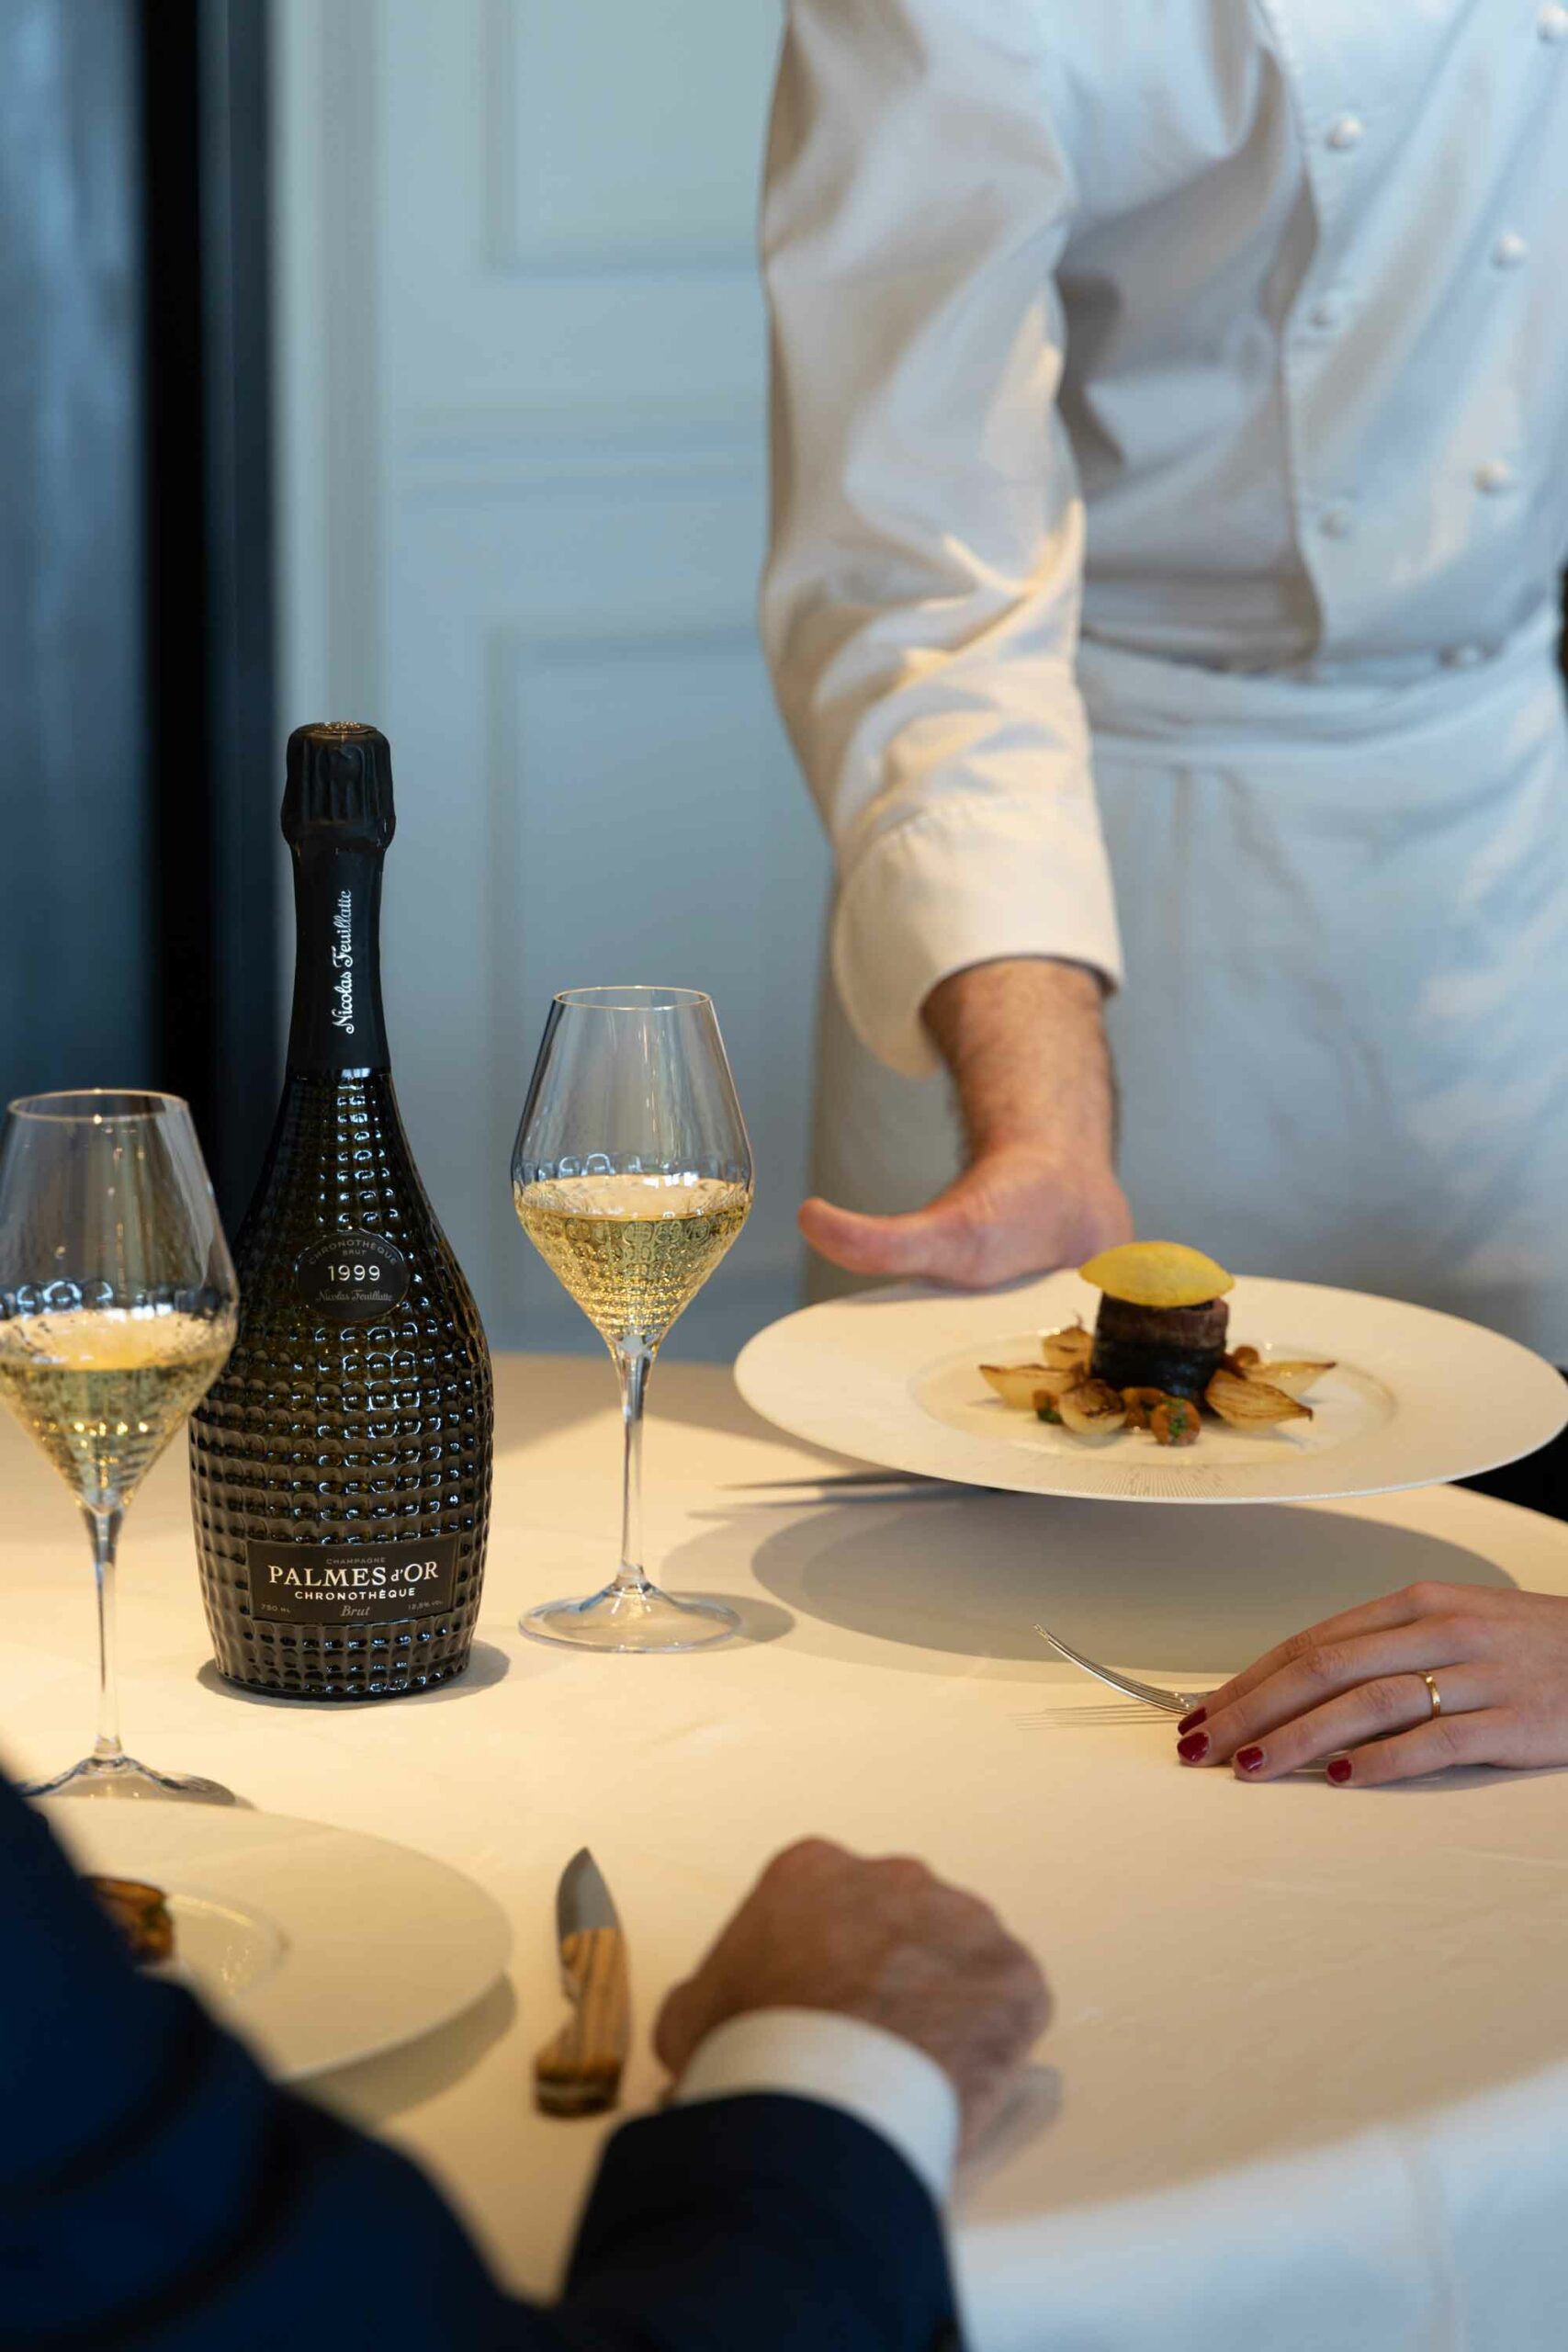 Le Chef du restaurant étoilé du Royal Champagne pose une assiette sur la table à côté de la Cuvée Chronothèque Palmes d'Or Champagne Nicolas Feuillatte | Réalisation Agence de communication Discovery